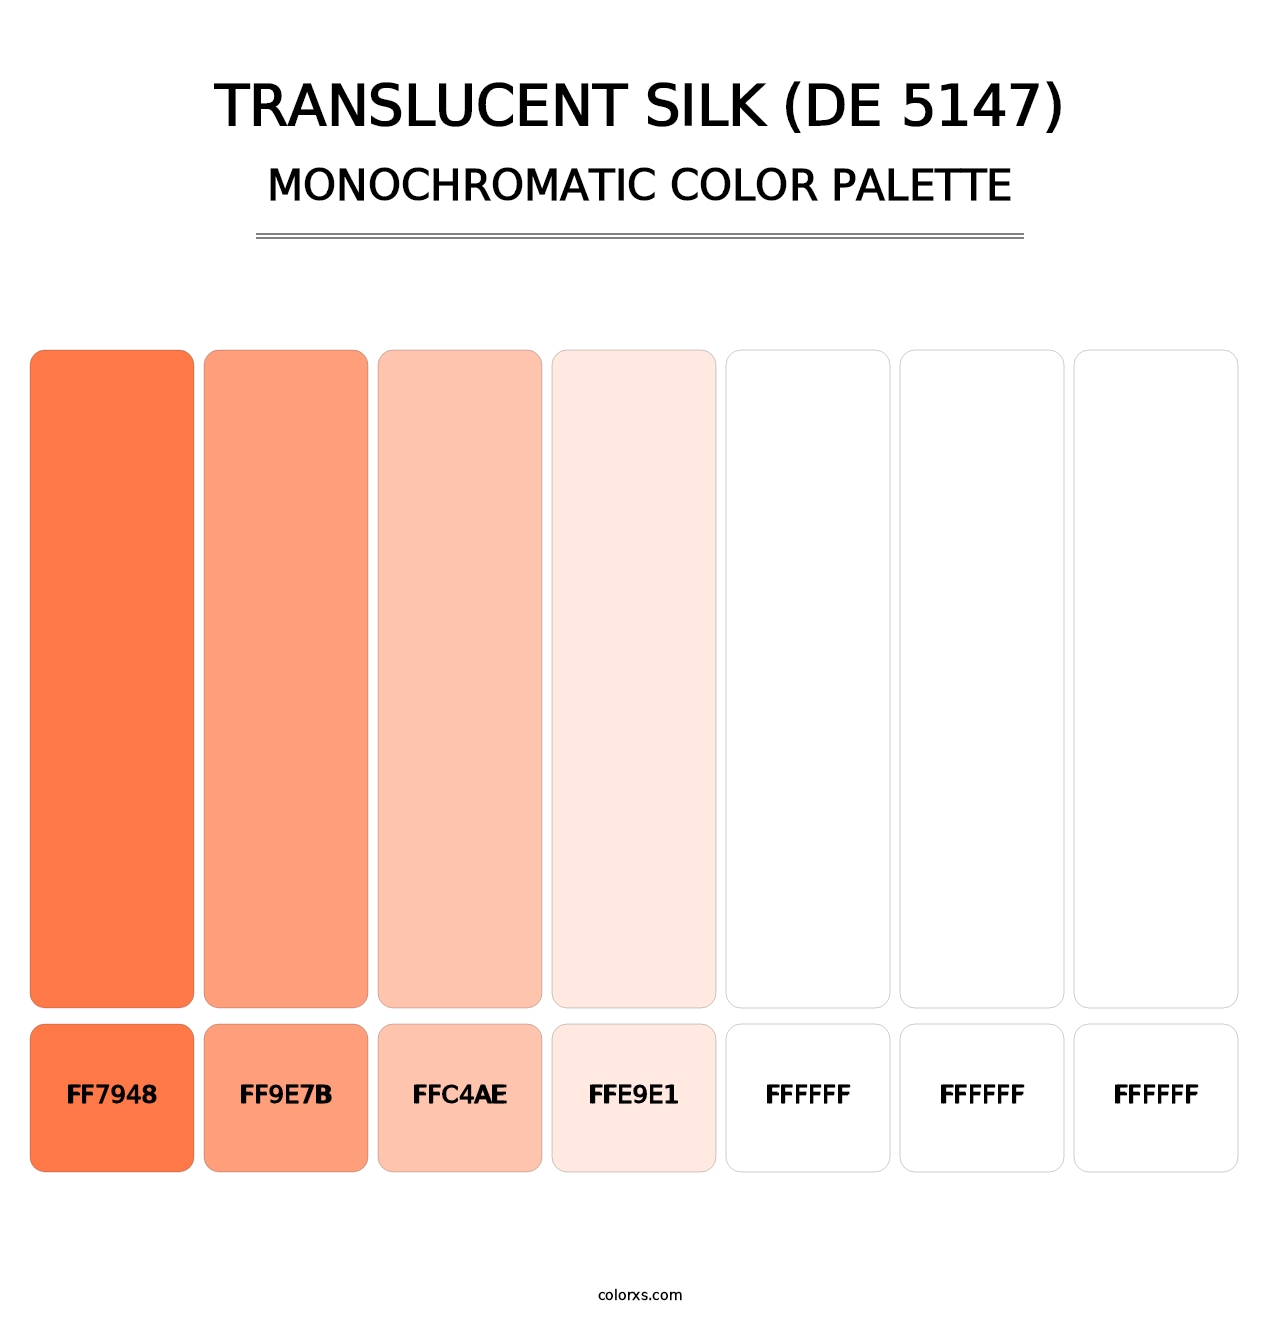 Translucent Silk (DE 5147) - Monochromatic Color Palette